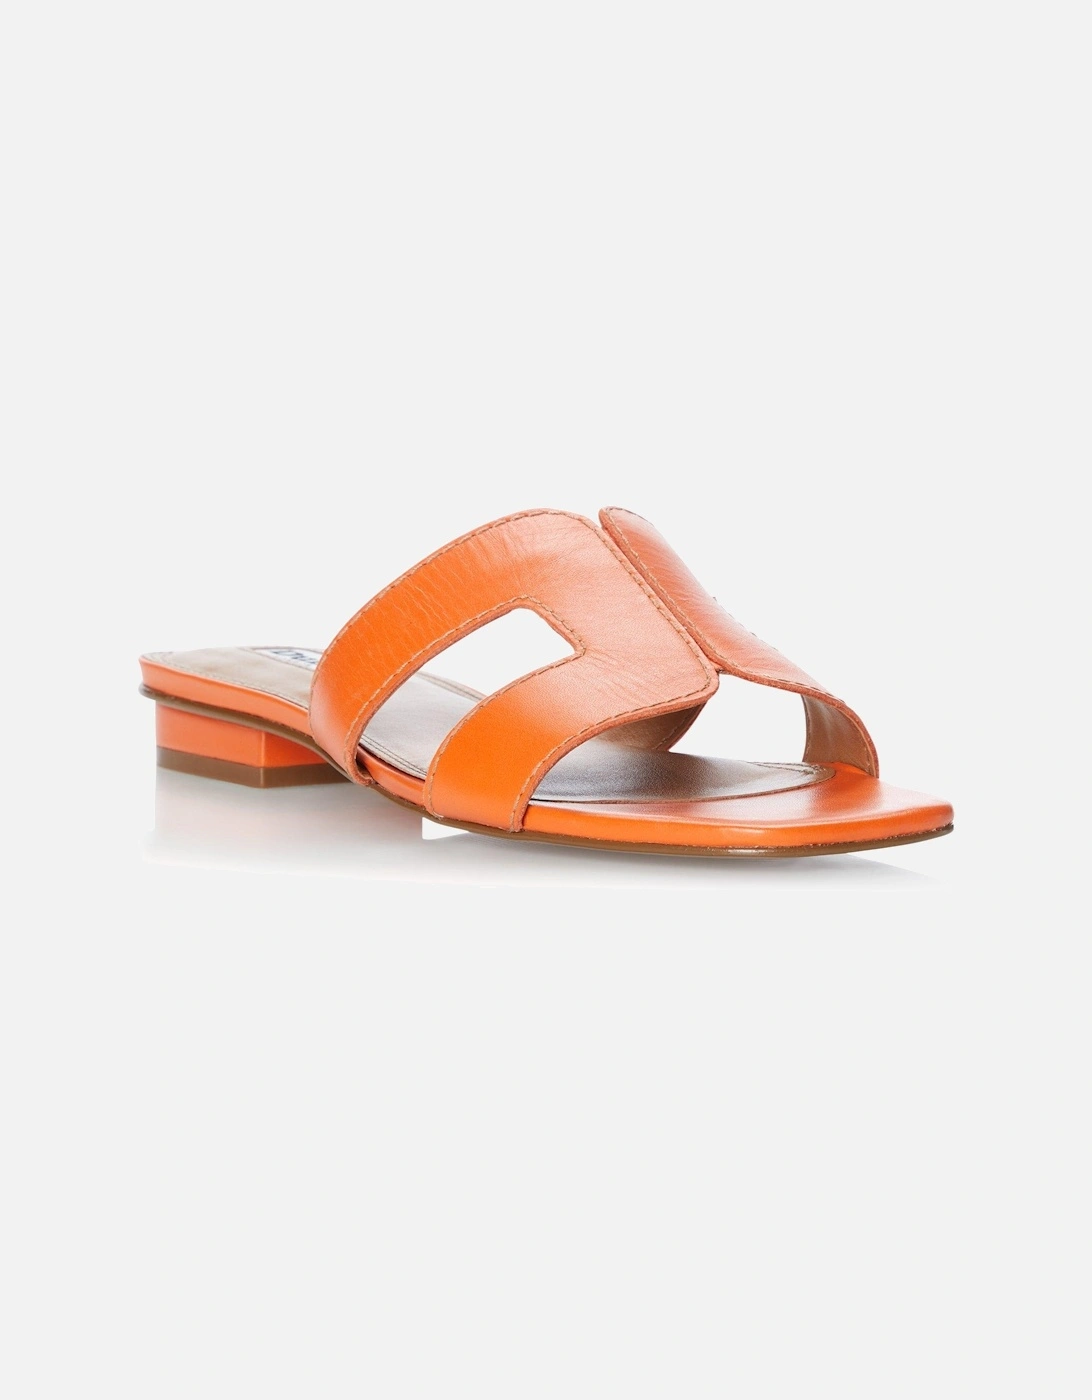 Ladies Loupe - Smart Slider Sandals, 7 of 6